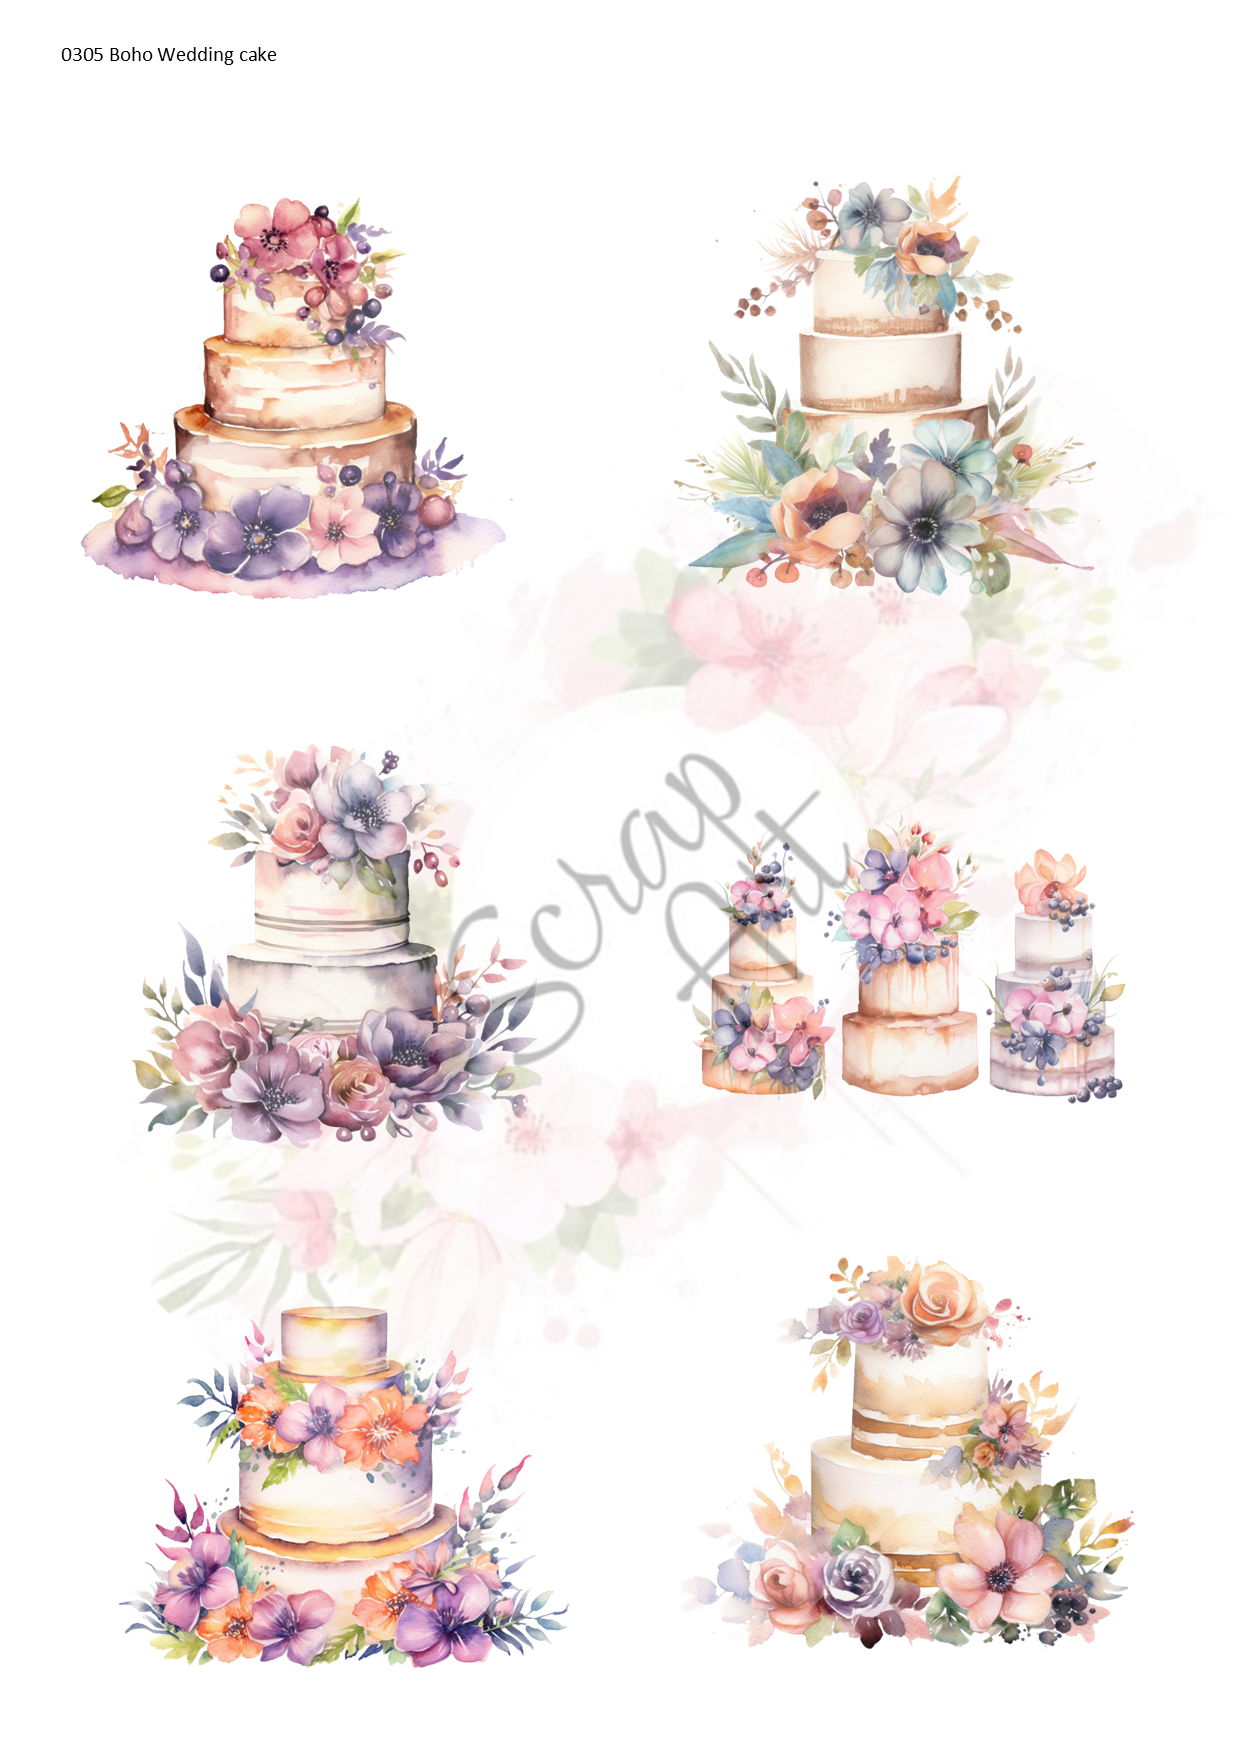 0305 Boho wedding cakes